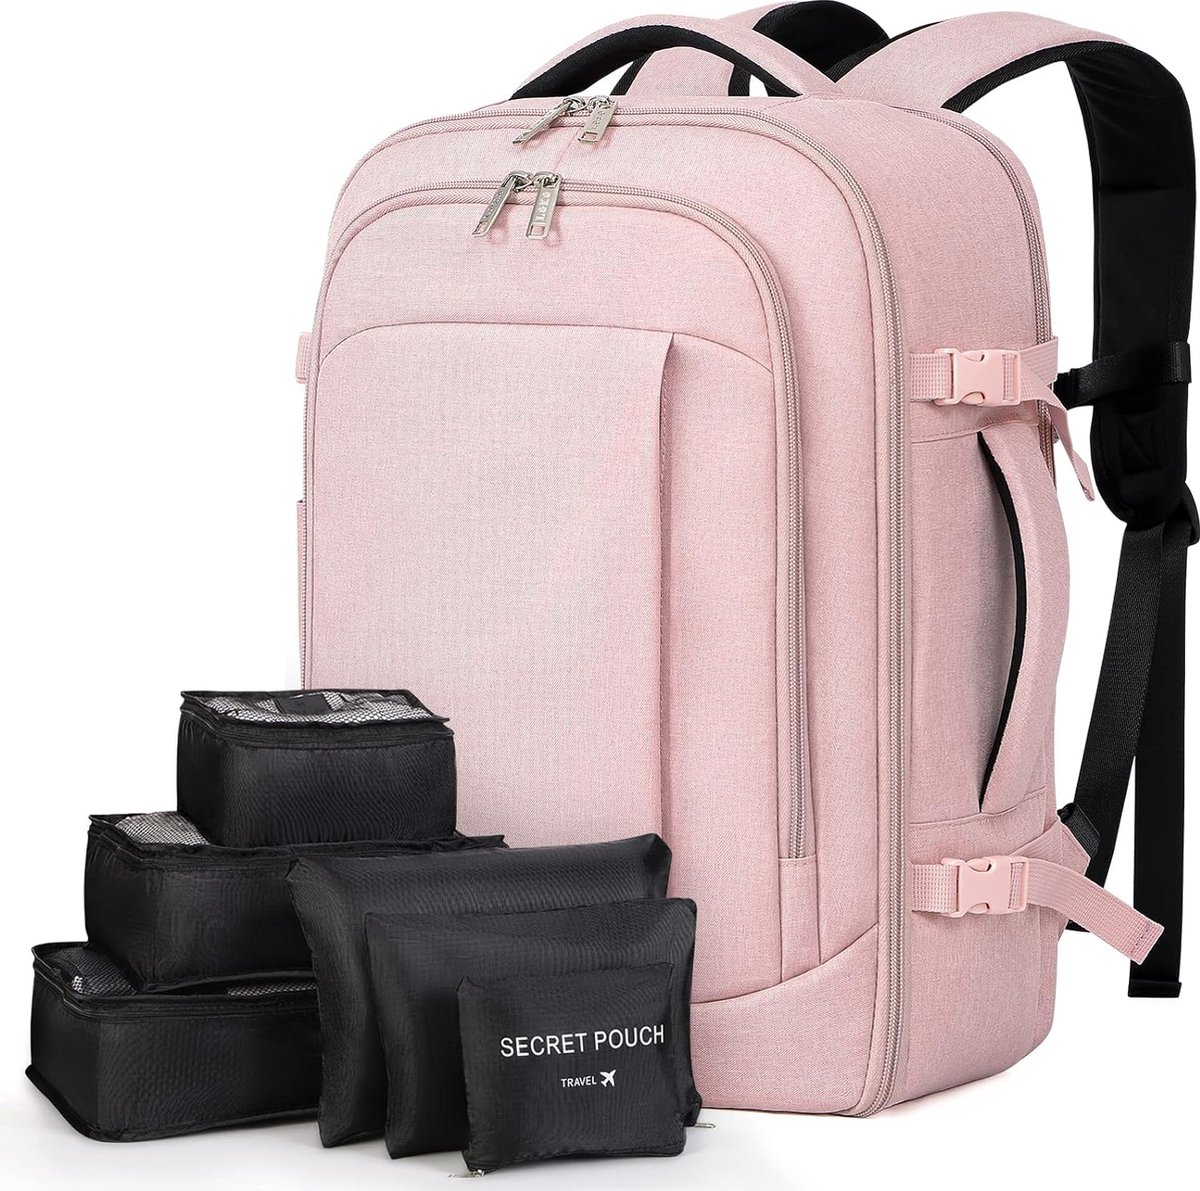 Grote rugzak voor heren en dames, 17 inch laptoprugzak, handbagage, rugzak, reisrugzak met 6-delige kledingtassen voor vakantie, business, werk, reizen, roze, Rugzak